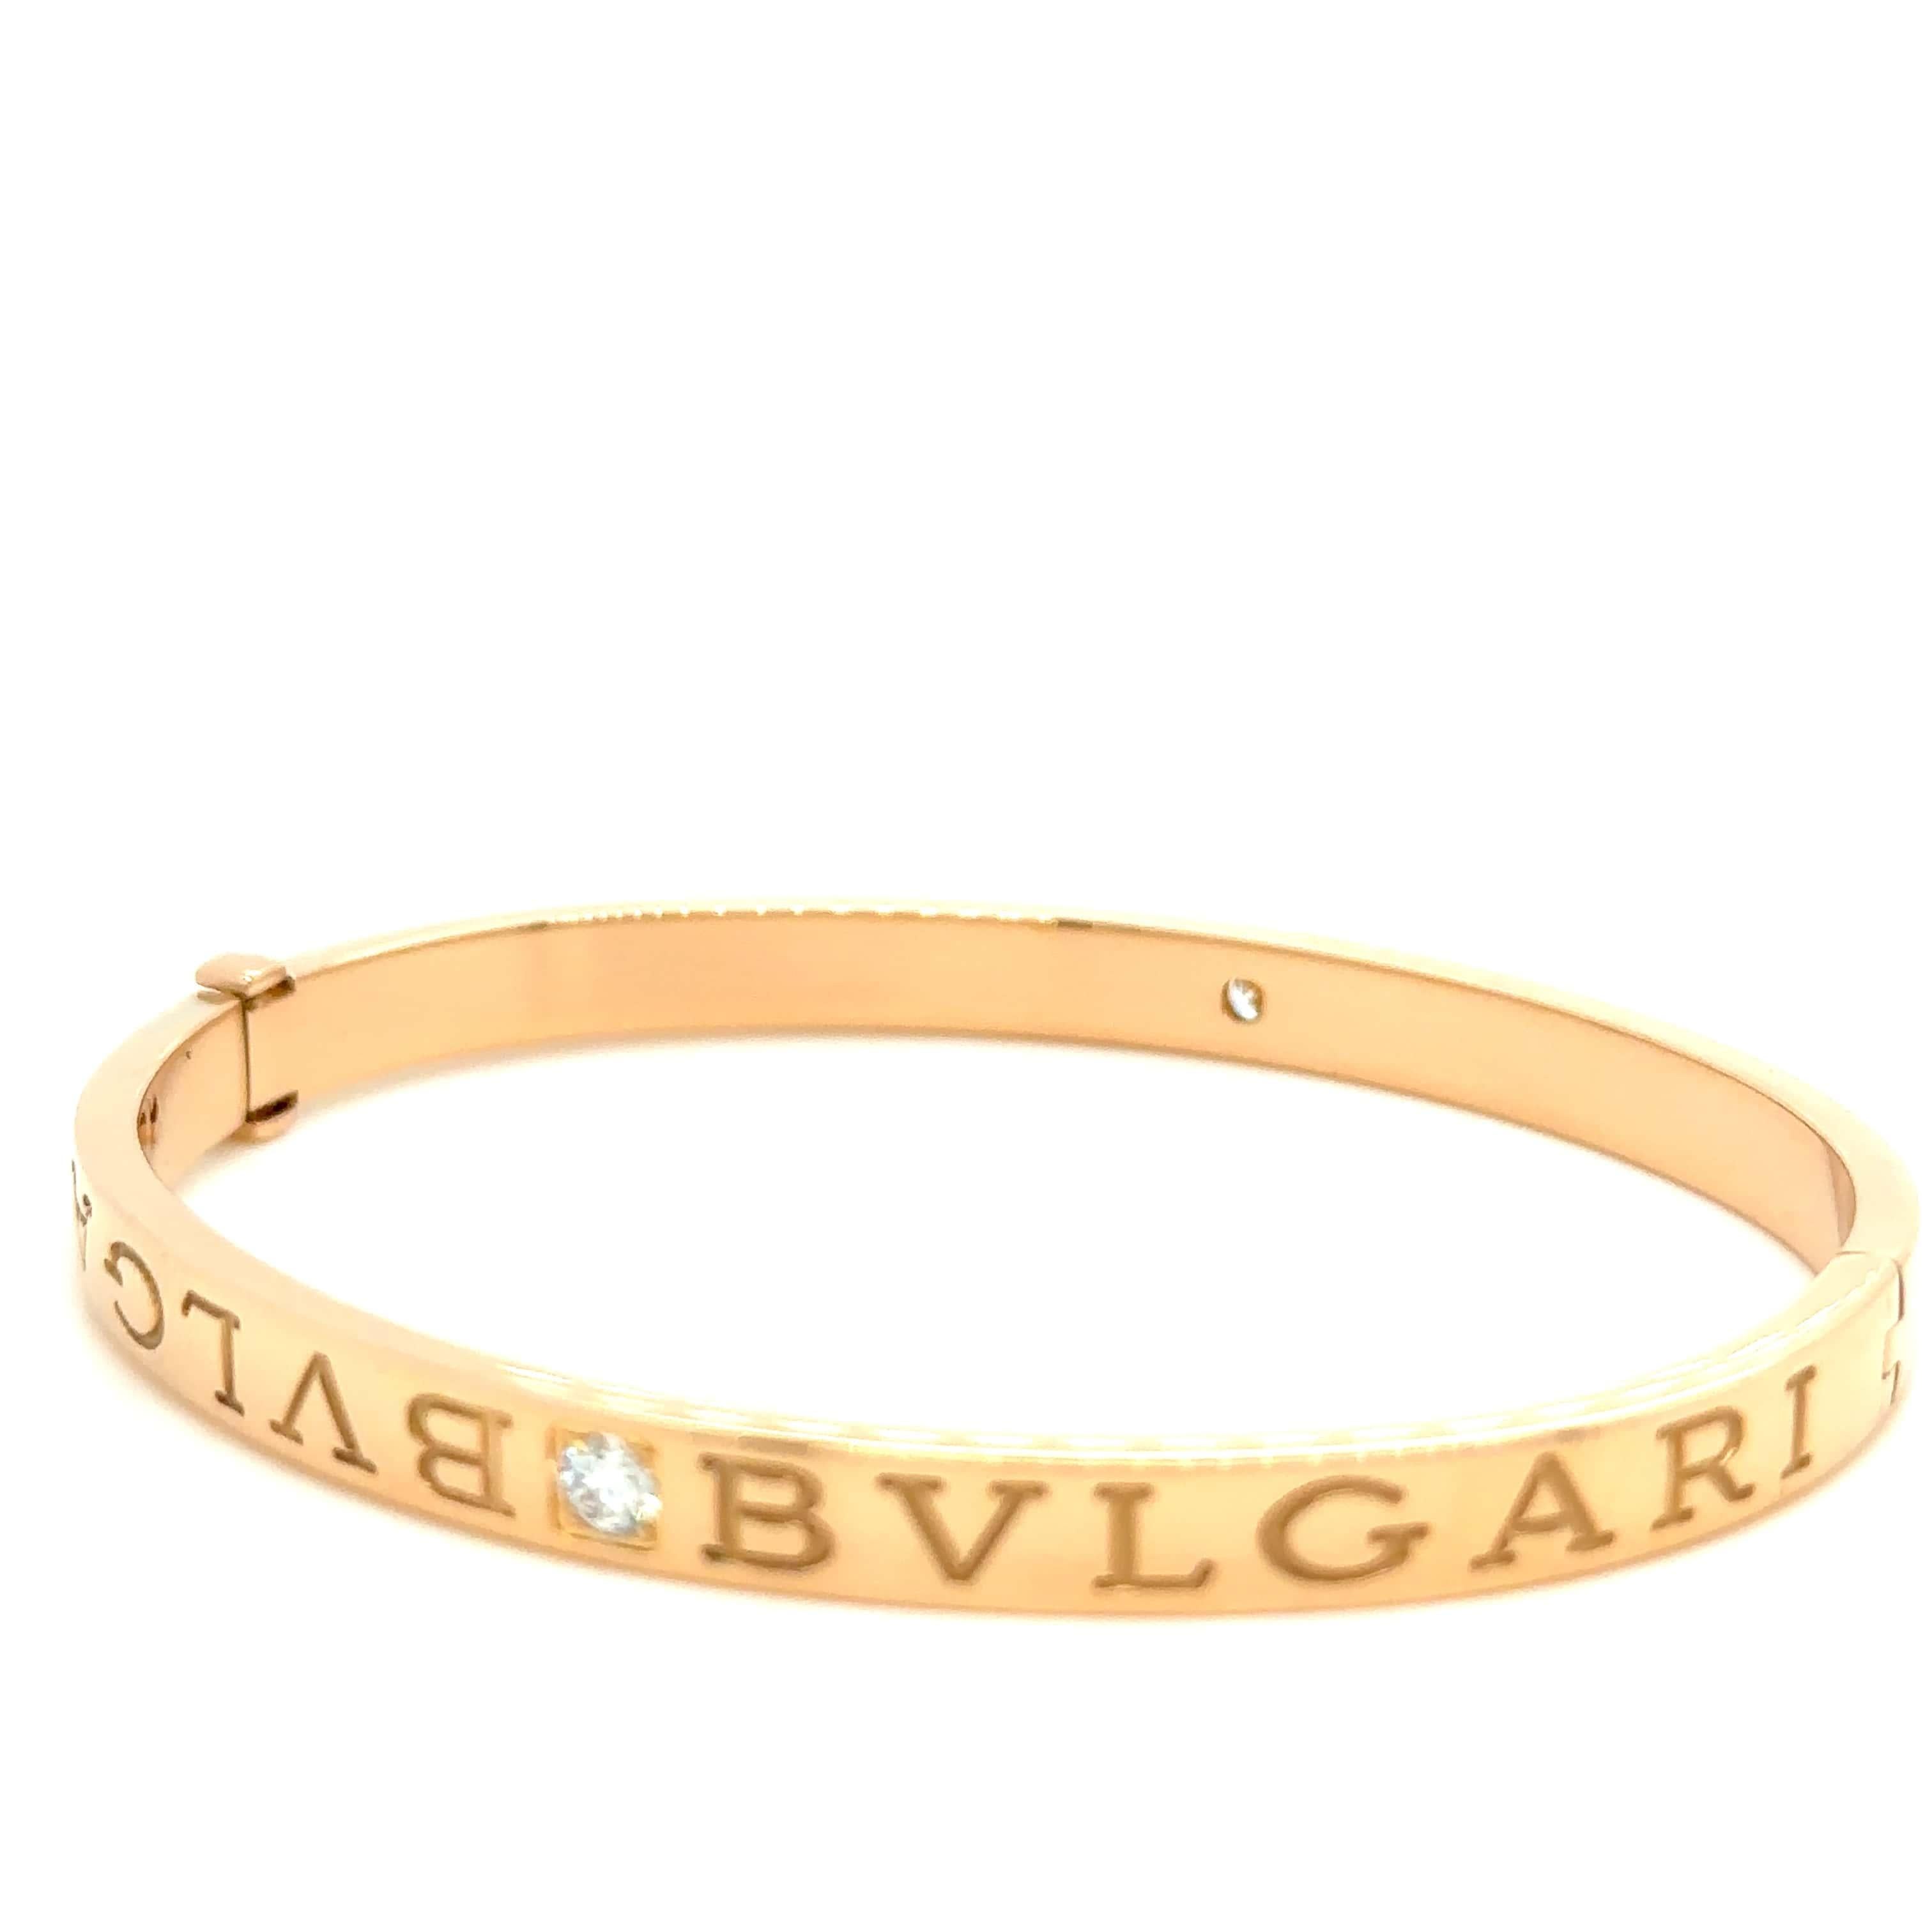 Women's Bvlgari Bvlgari Rose Gold Bracelet 0.26 Carat